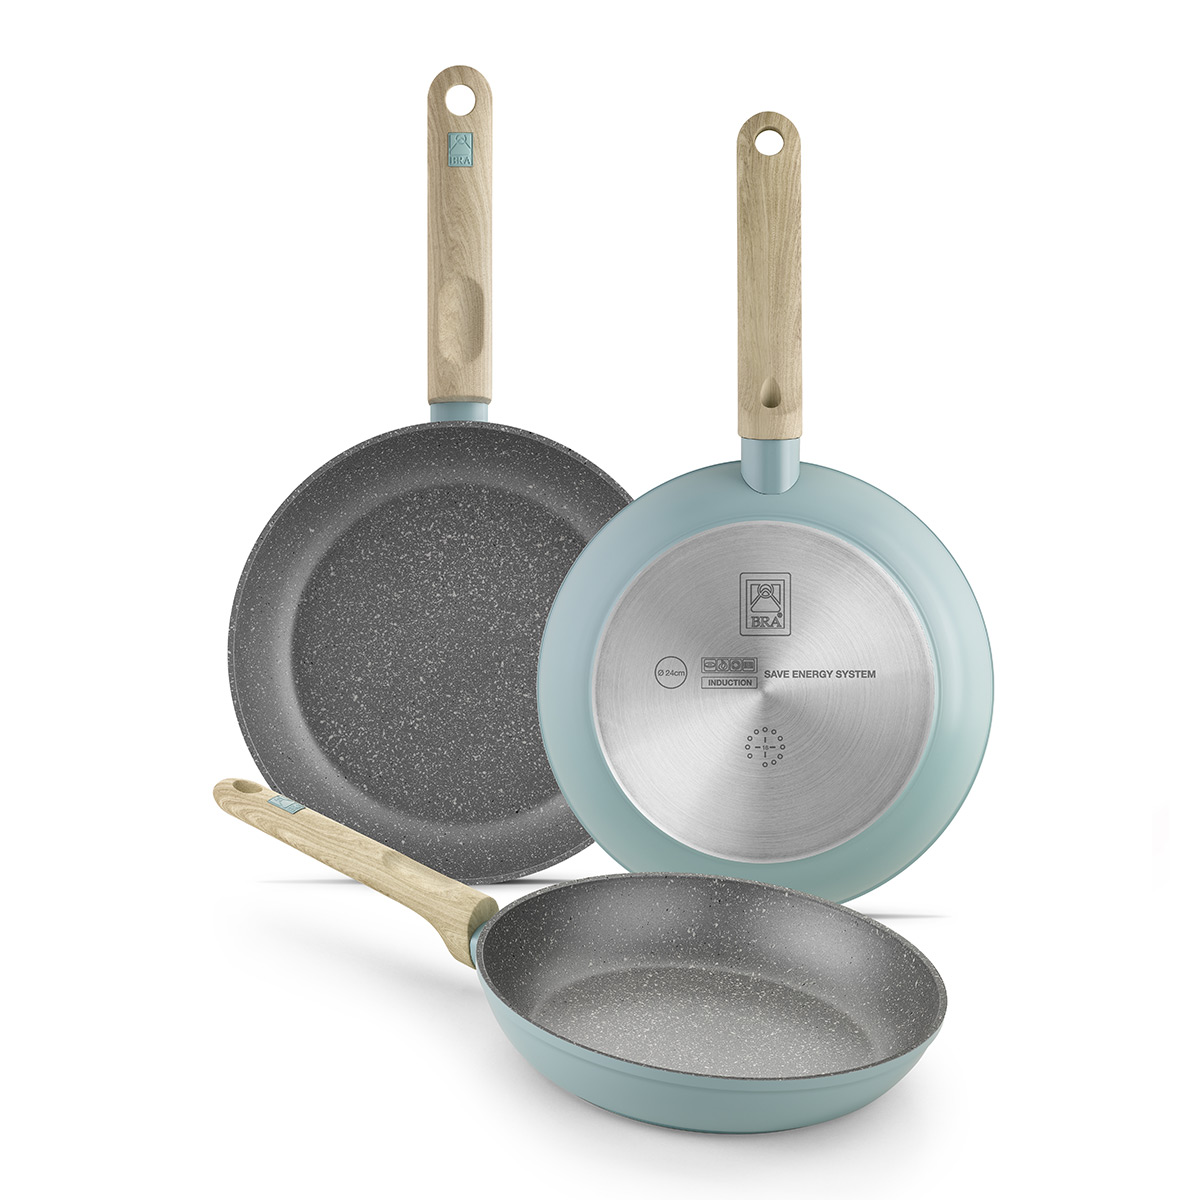 Basics Juego de utensilios de cocina de acero inoxidable de 11  piezas, ollas y sartenes, color plateado